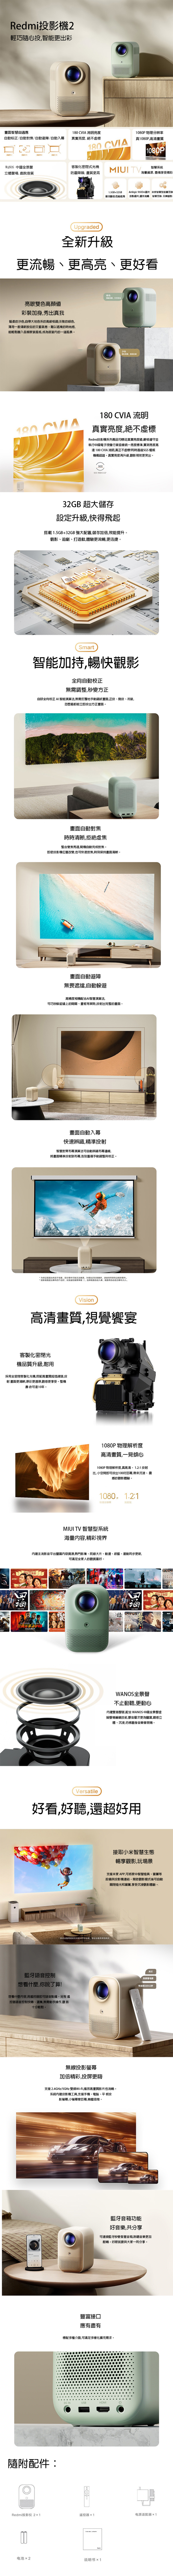 Xiaomi Redmi projector 2